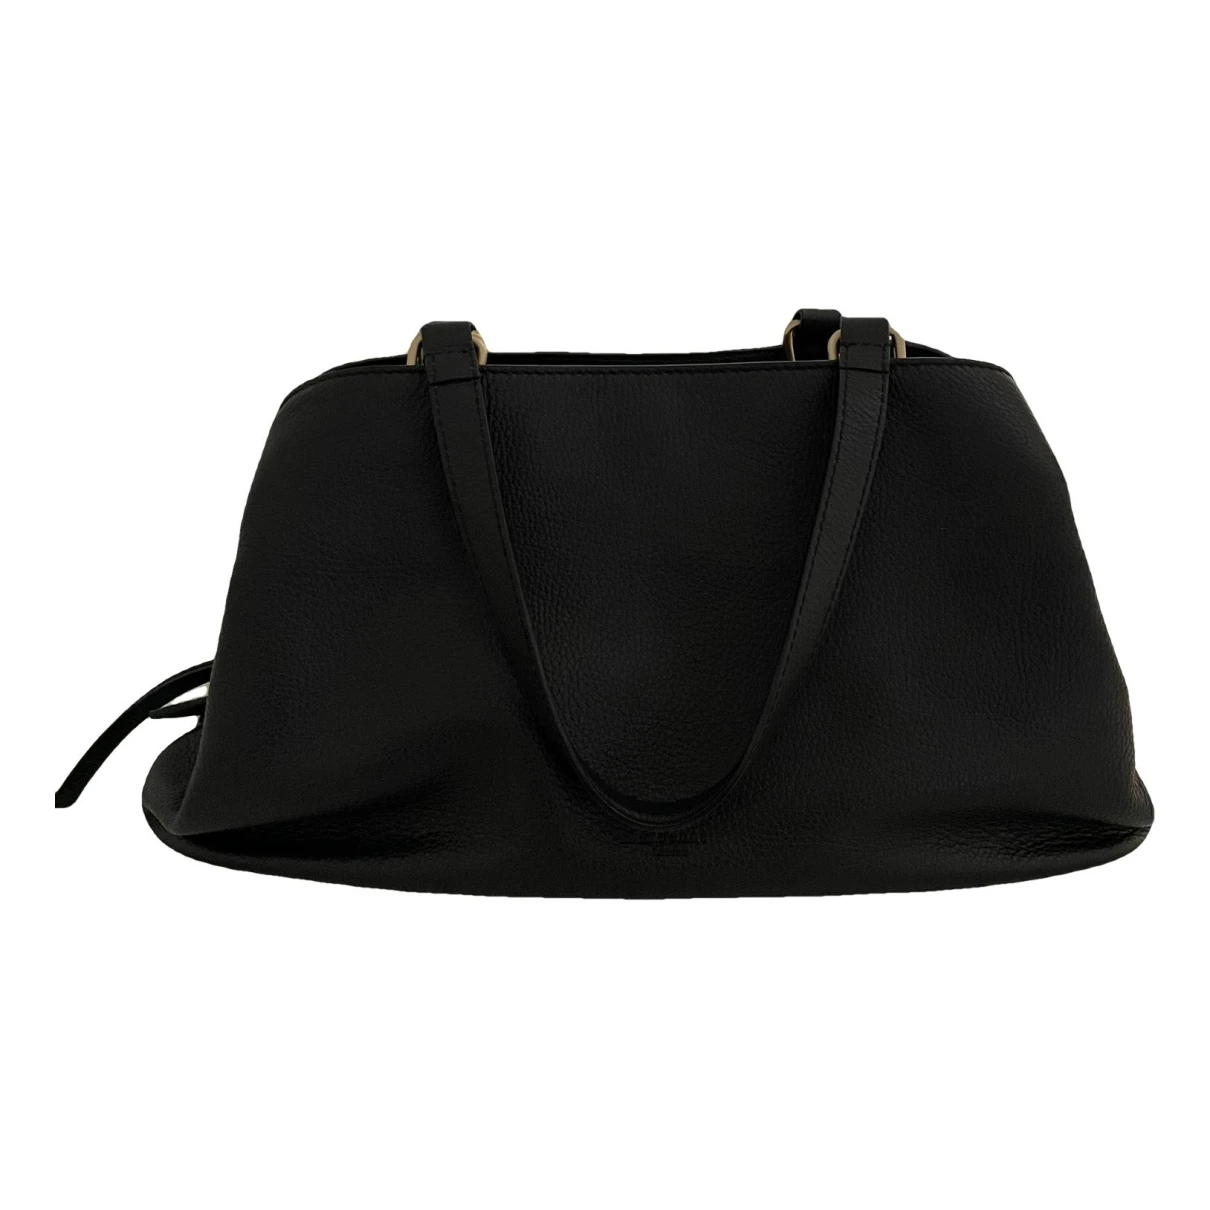 Pre-owned Lk Bennett Leather Handbag In Black